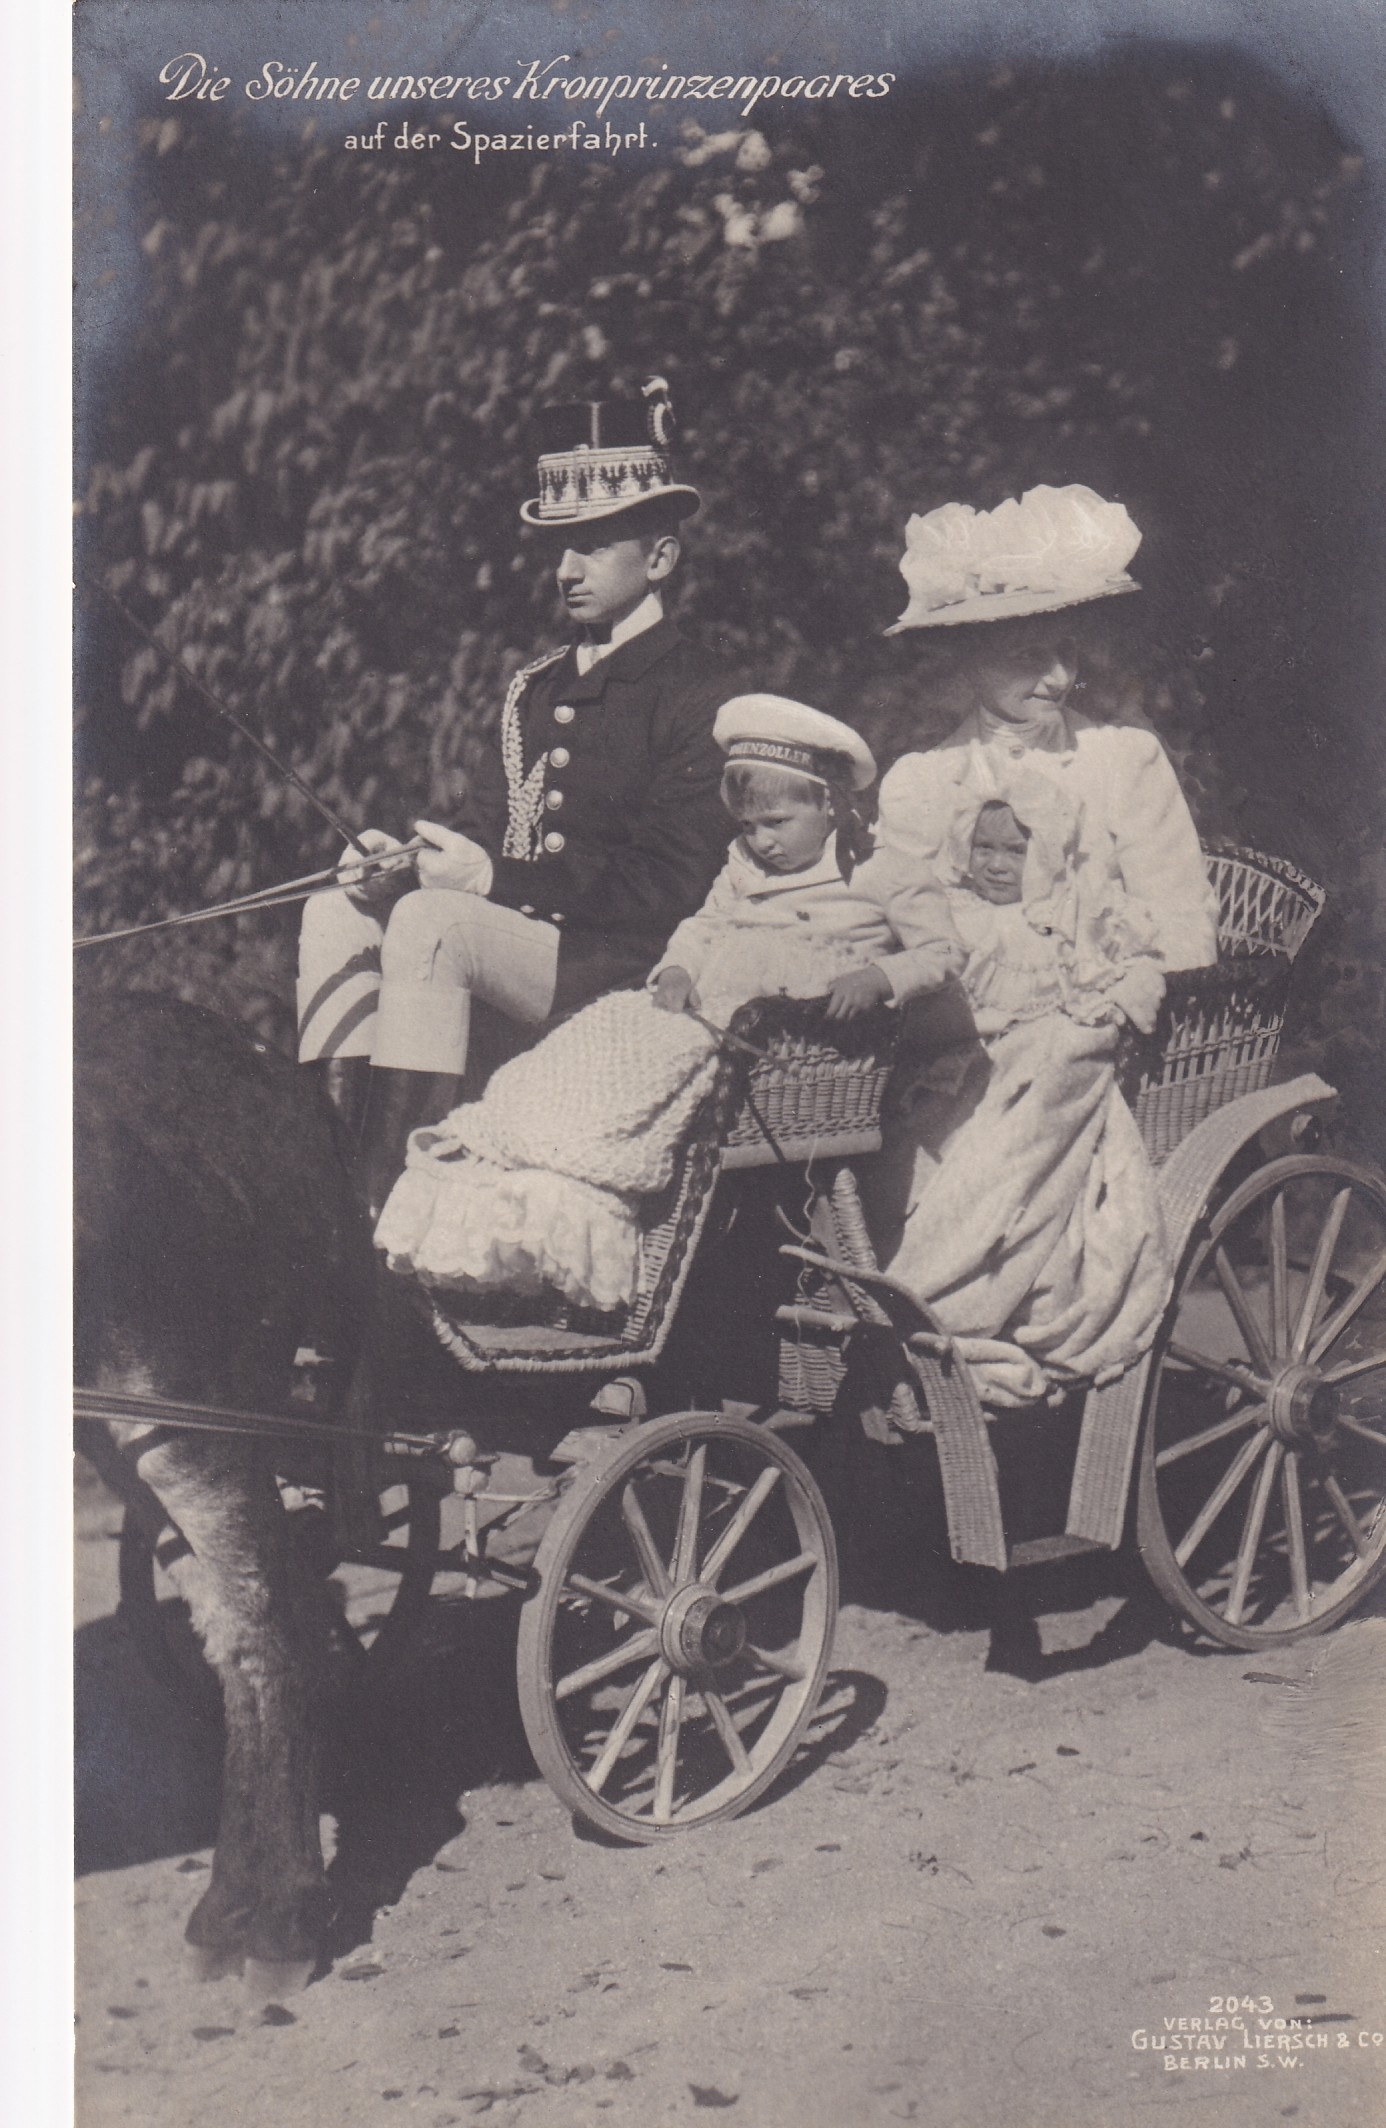 Bildpostkarte mit den zwei ältesten Söhnen des Kronprinzenpaares auf einer Ausfahrt, 1908 (Schloß Wernigerode GmbH RR-F)